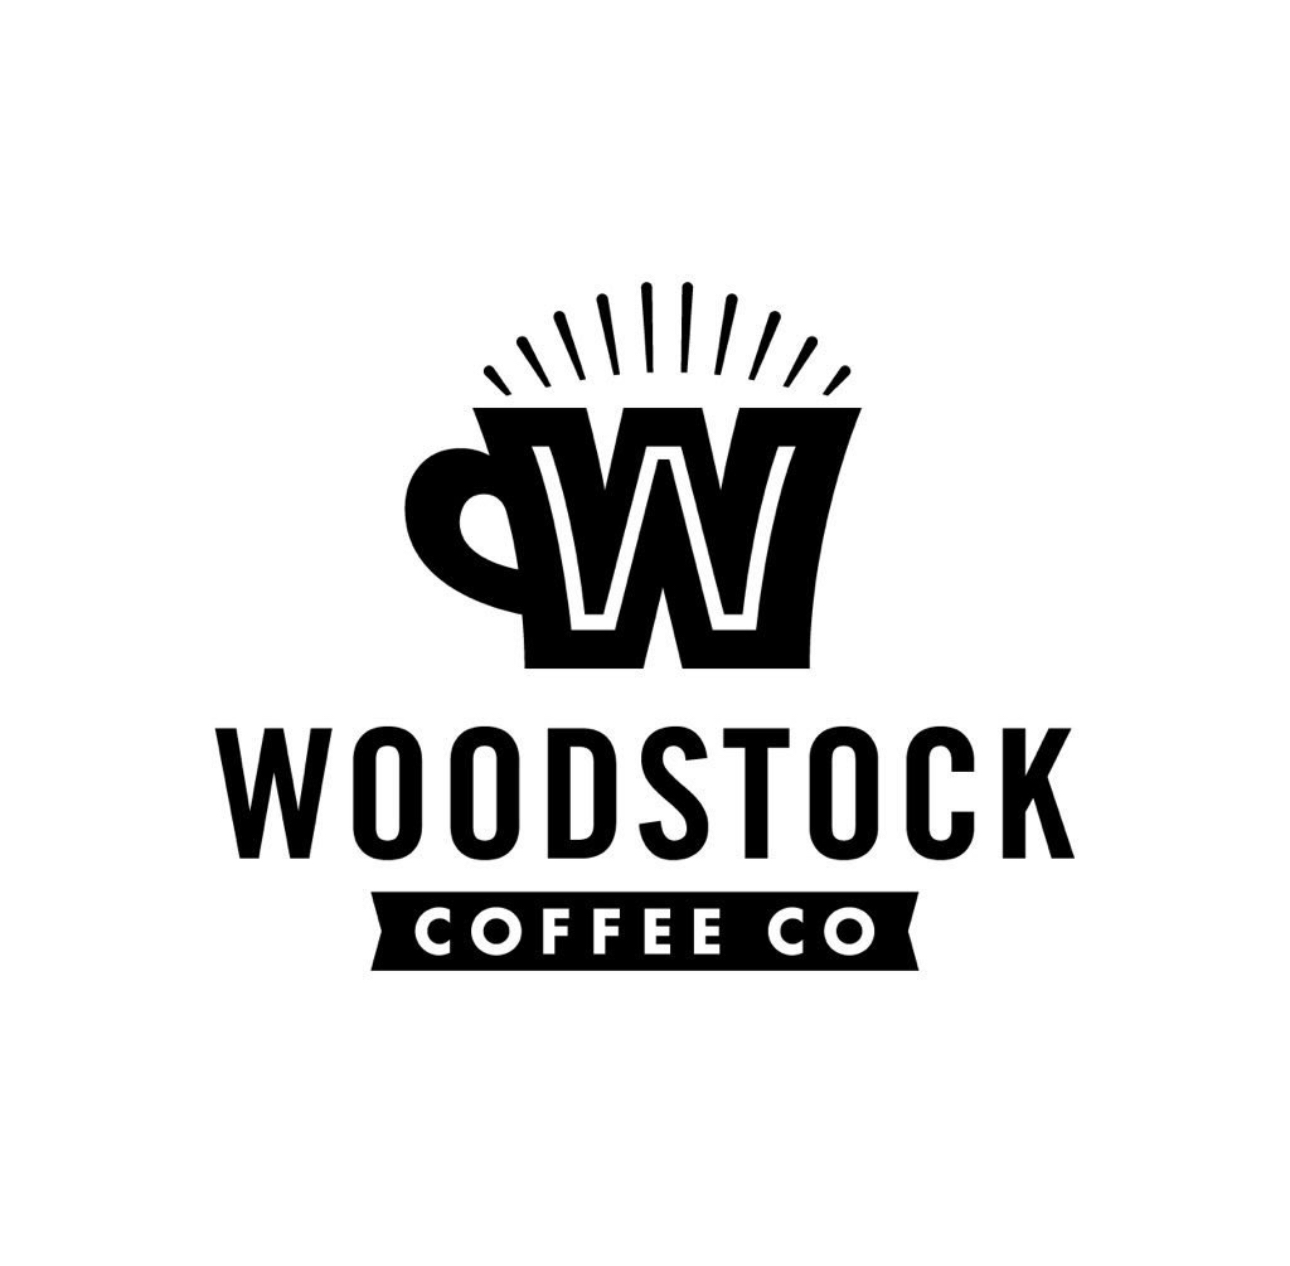 Woodstock Coffee Co